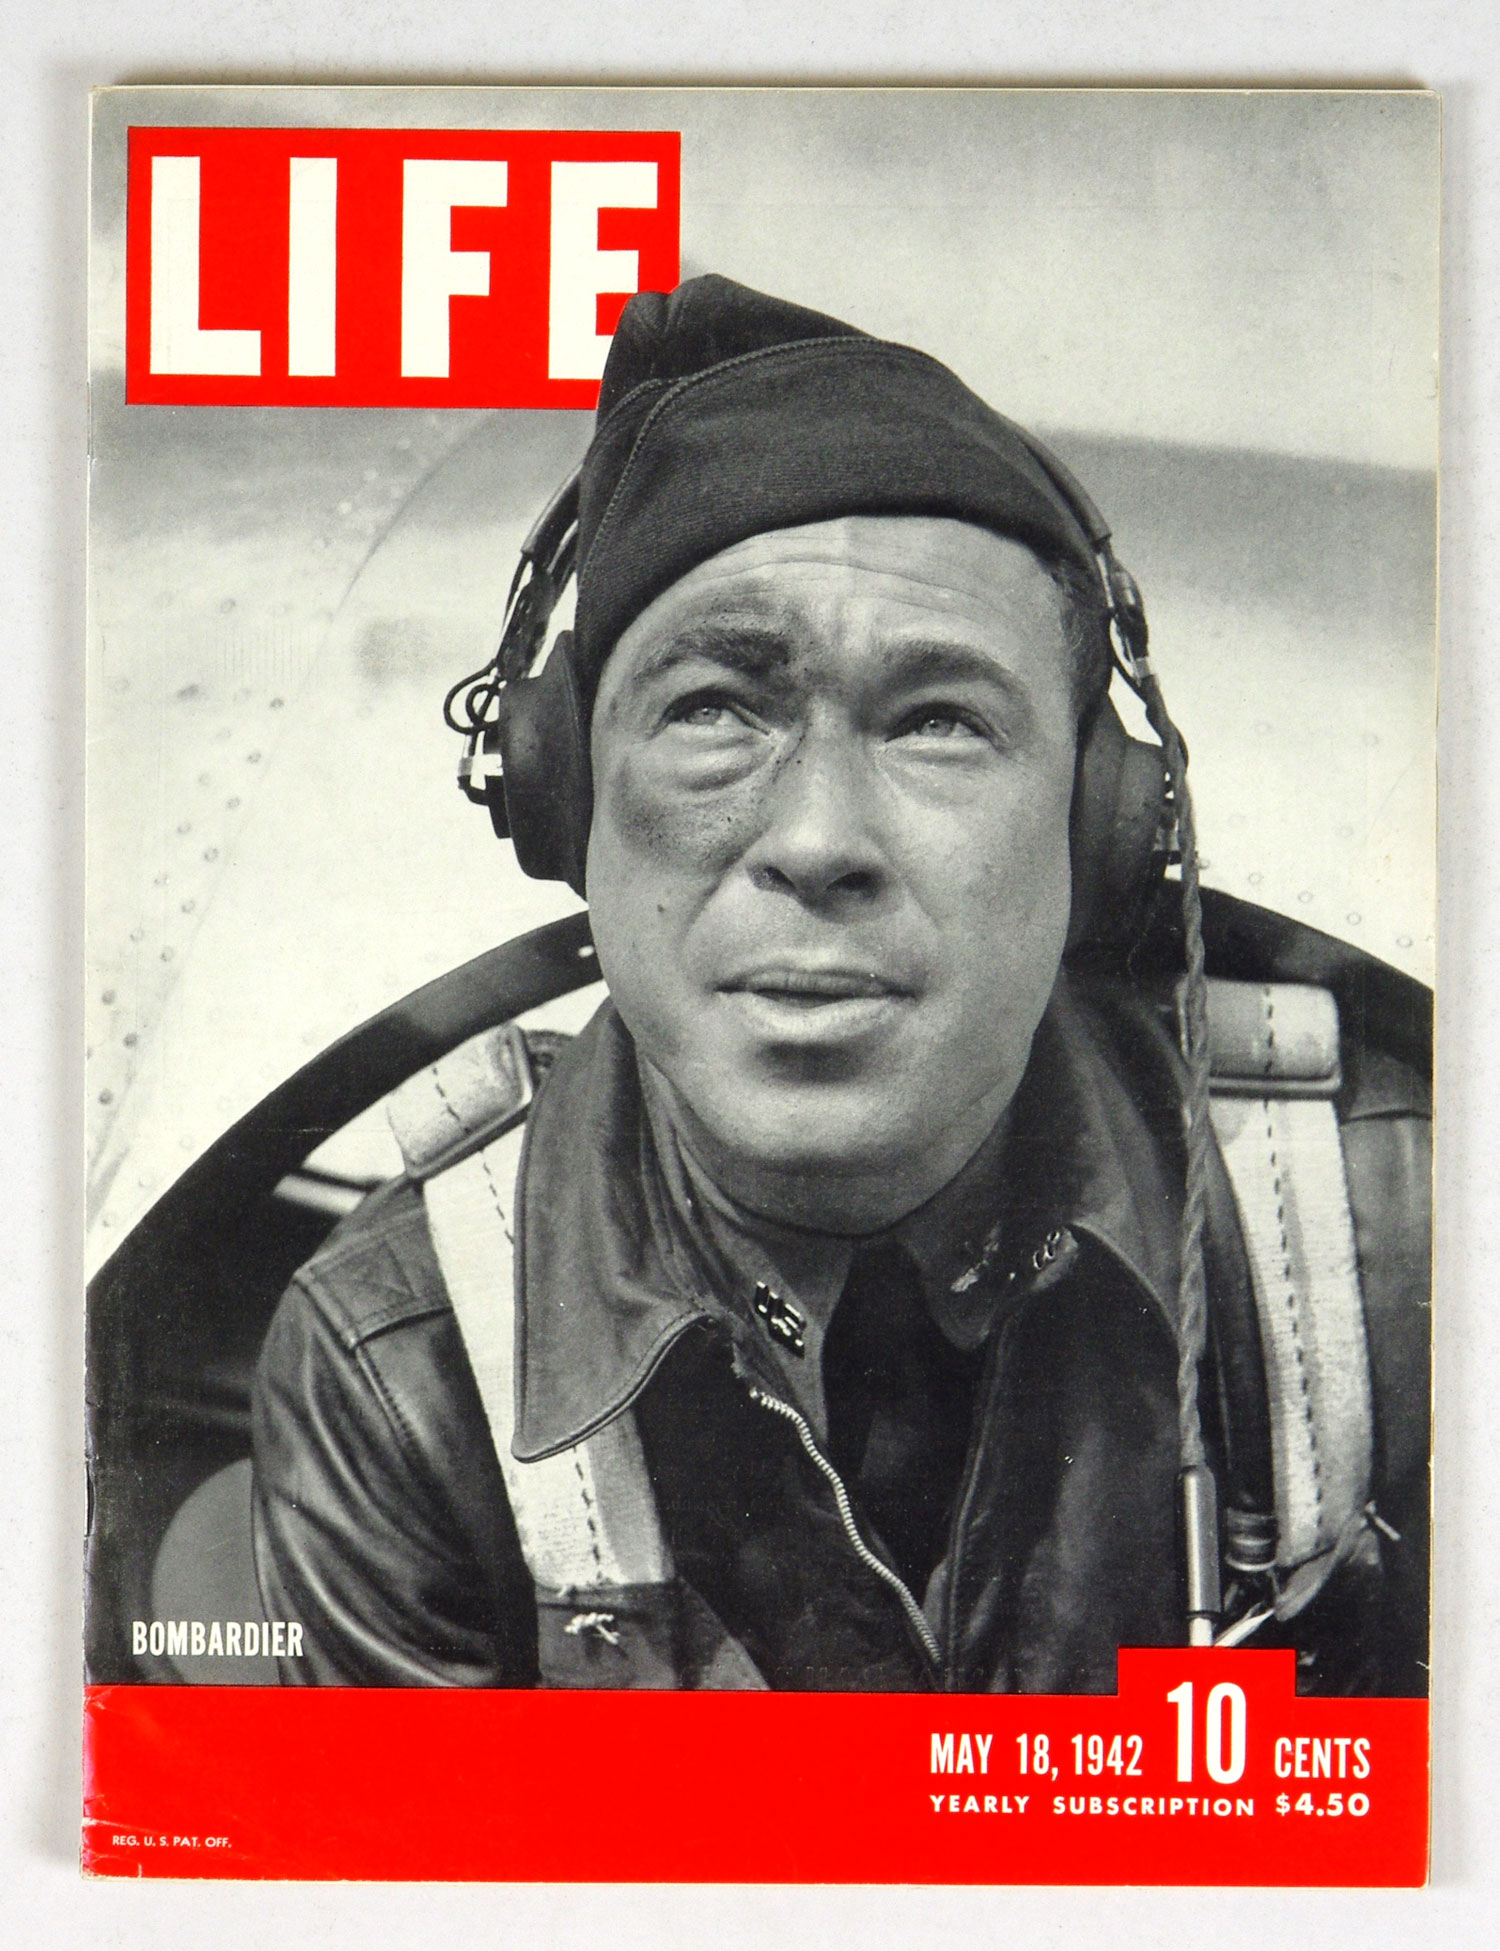 LIFE Magazine Back Issue 1942 May 18 Bombardier